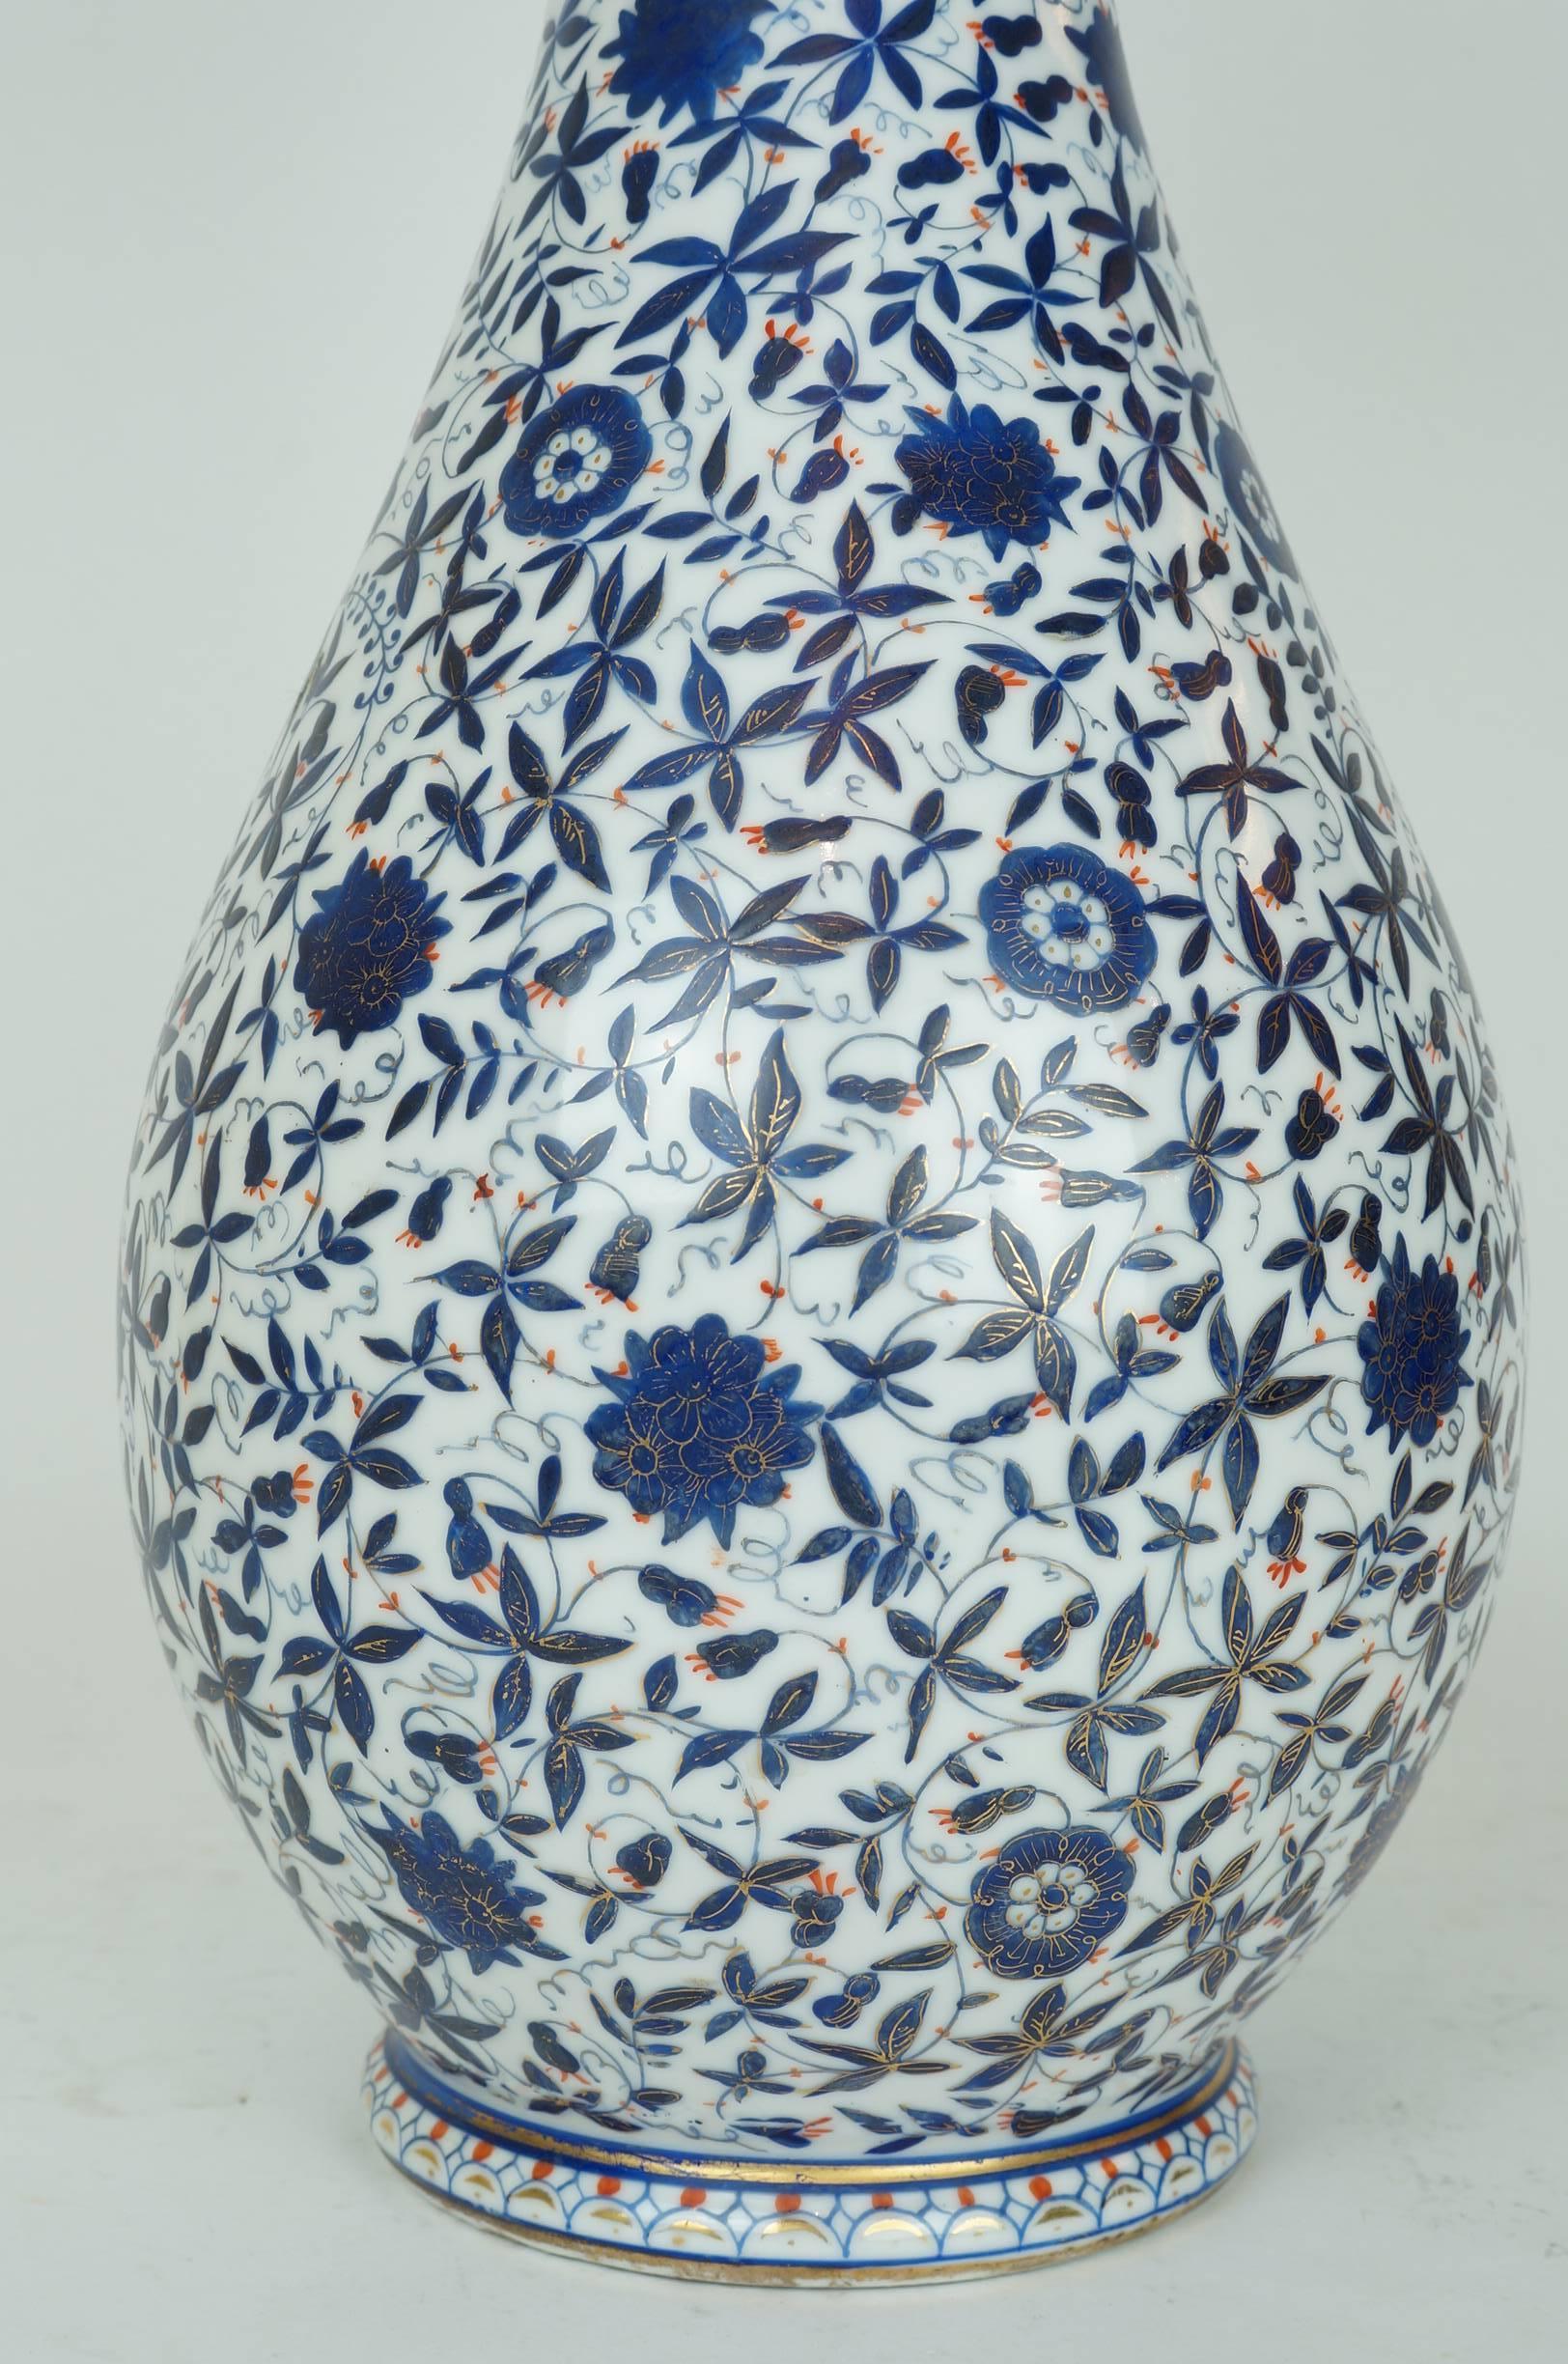 turkish vase design